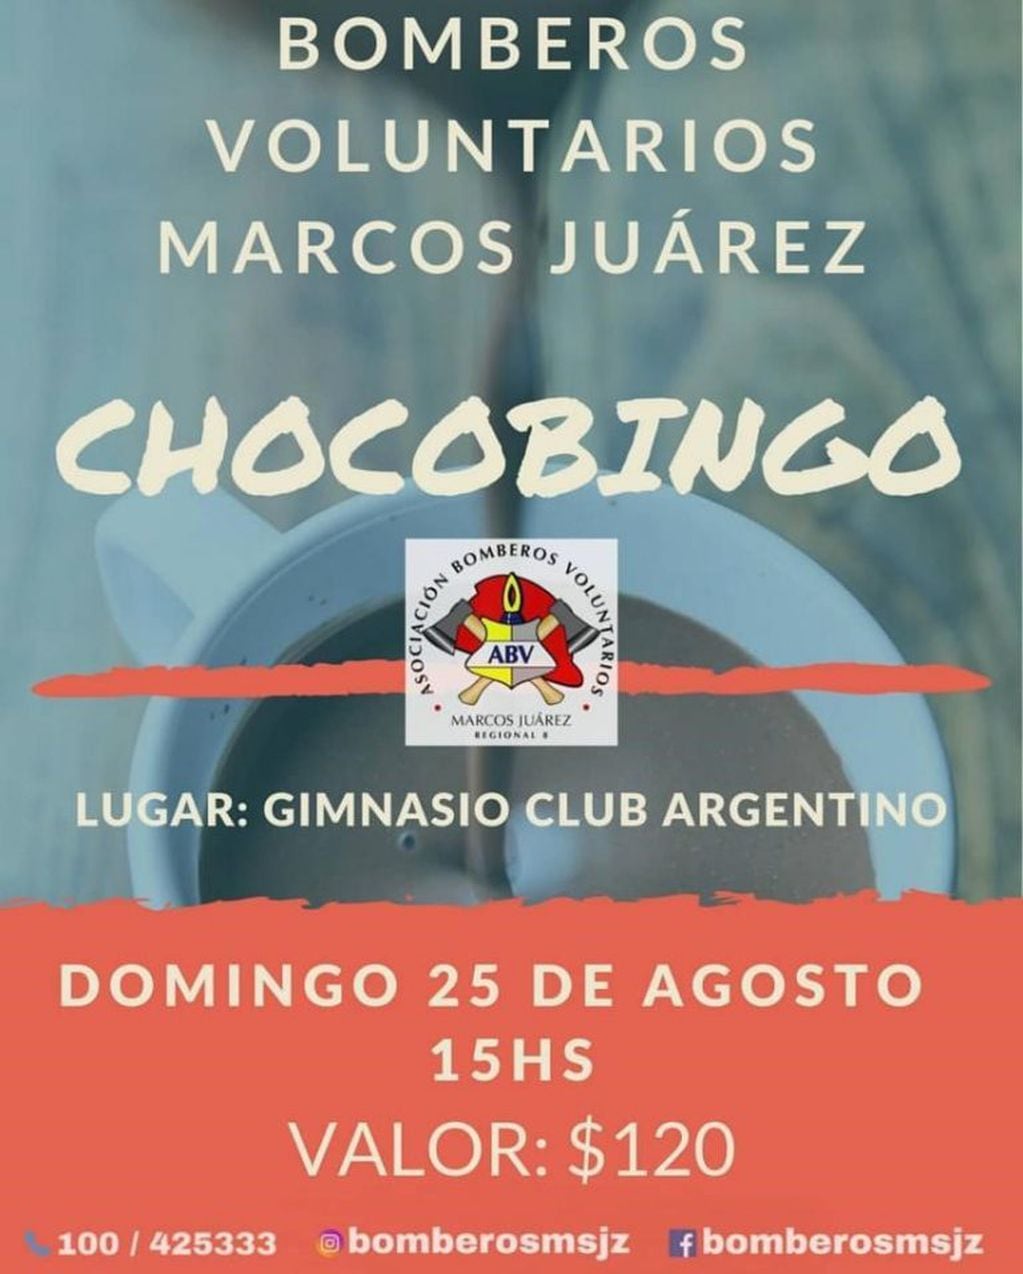 Chocobingo en el Gimnasio del Club Argentino.